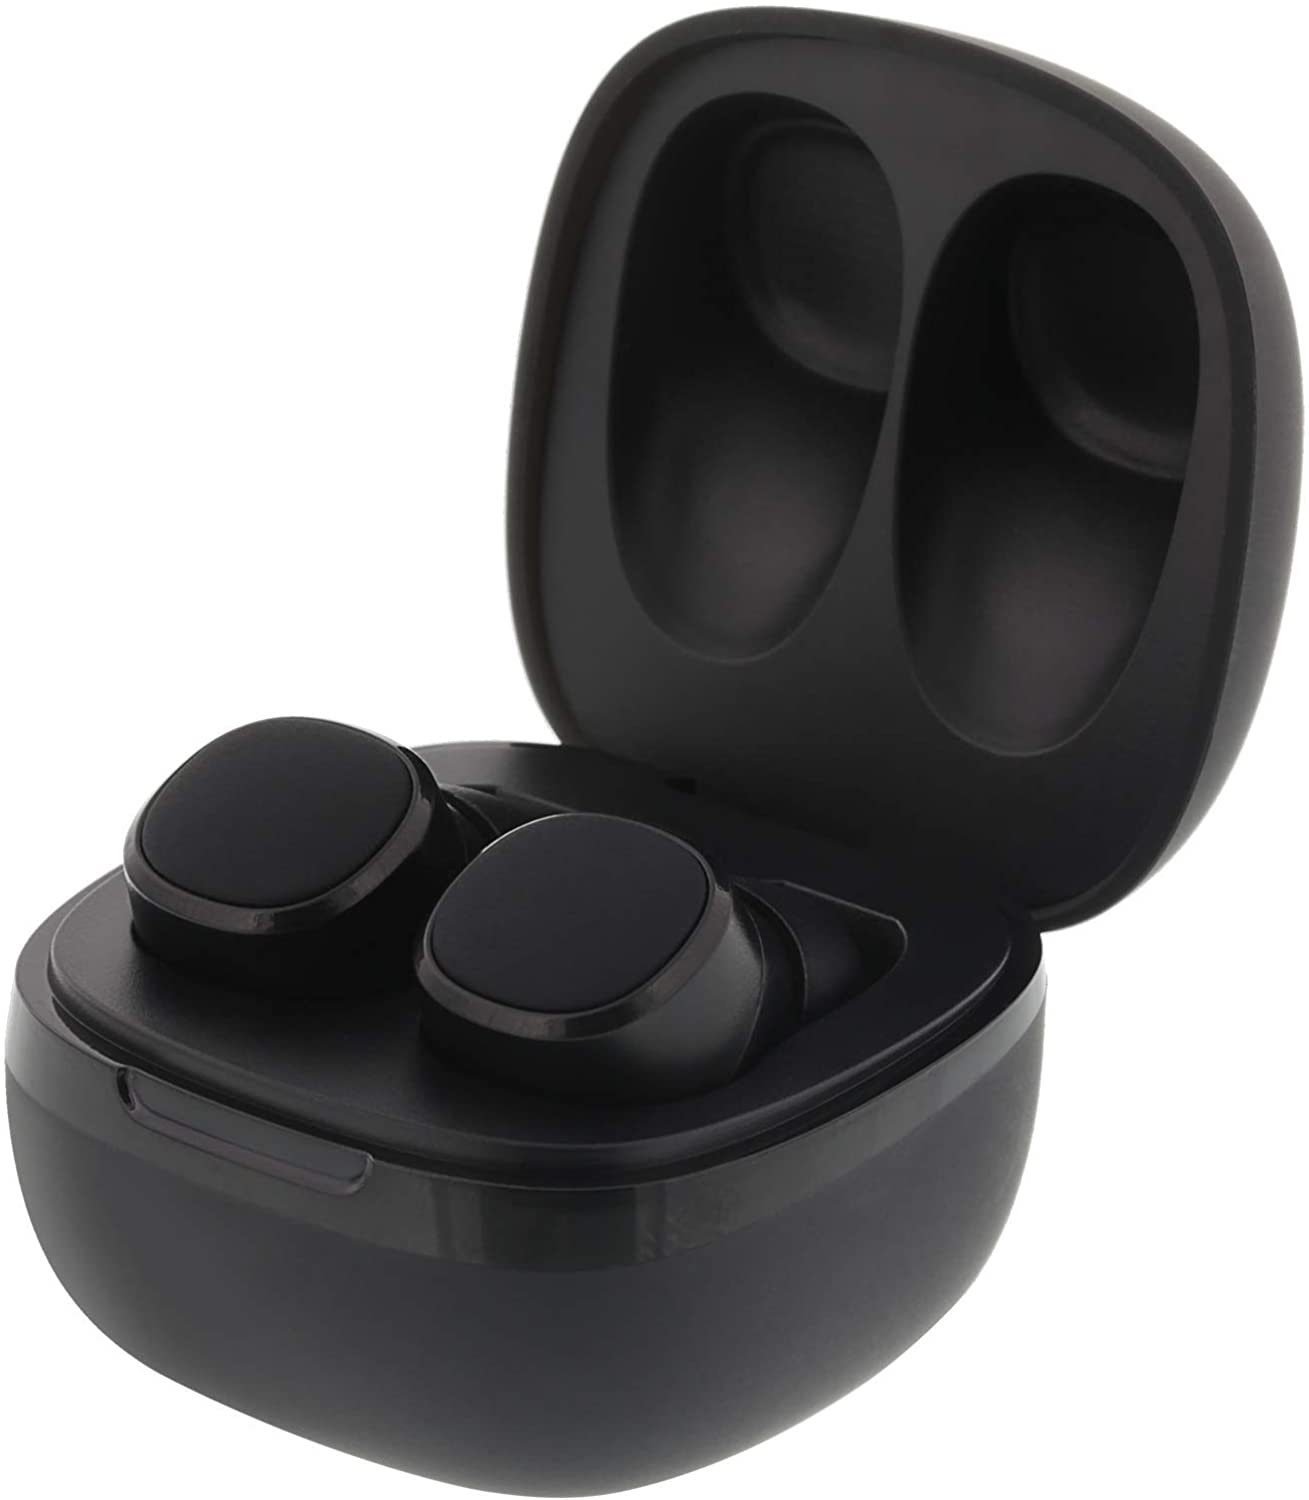 (Bluetooth Earbuds In In Ear Earbuds) Bluetooth-Kopfhörer Stereo mit Bluetooth Streetz Ear STREETZ Premi Kopfhörer, Kabellose Kabellose Kopfhörer,